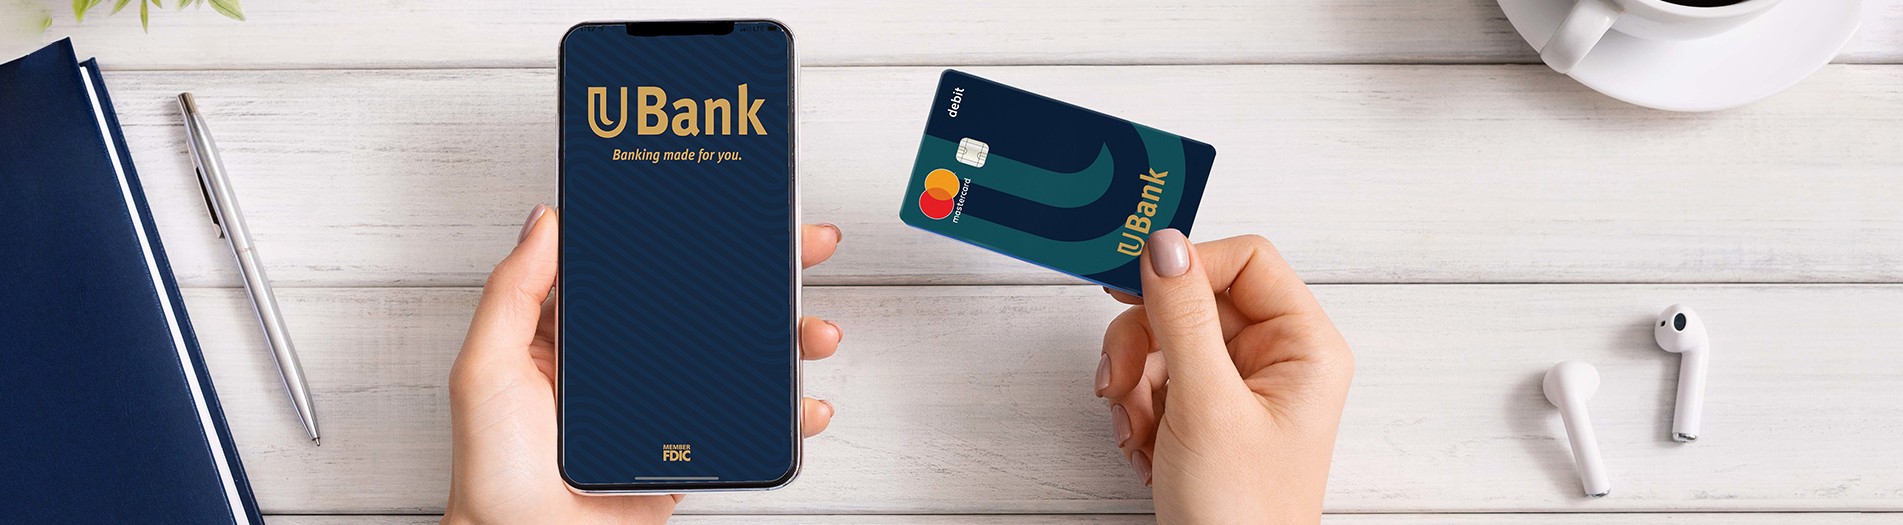 ubank app and debit card flatlay